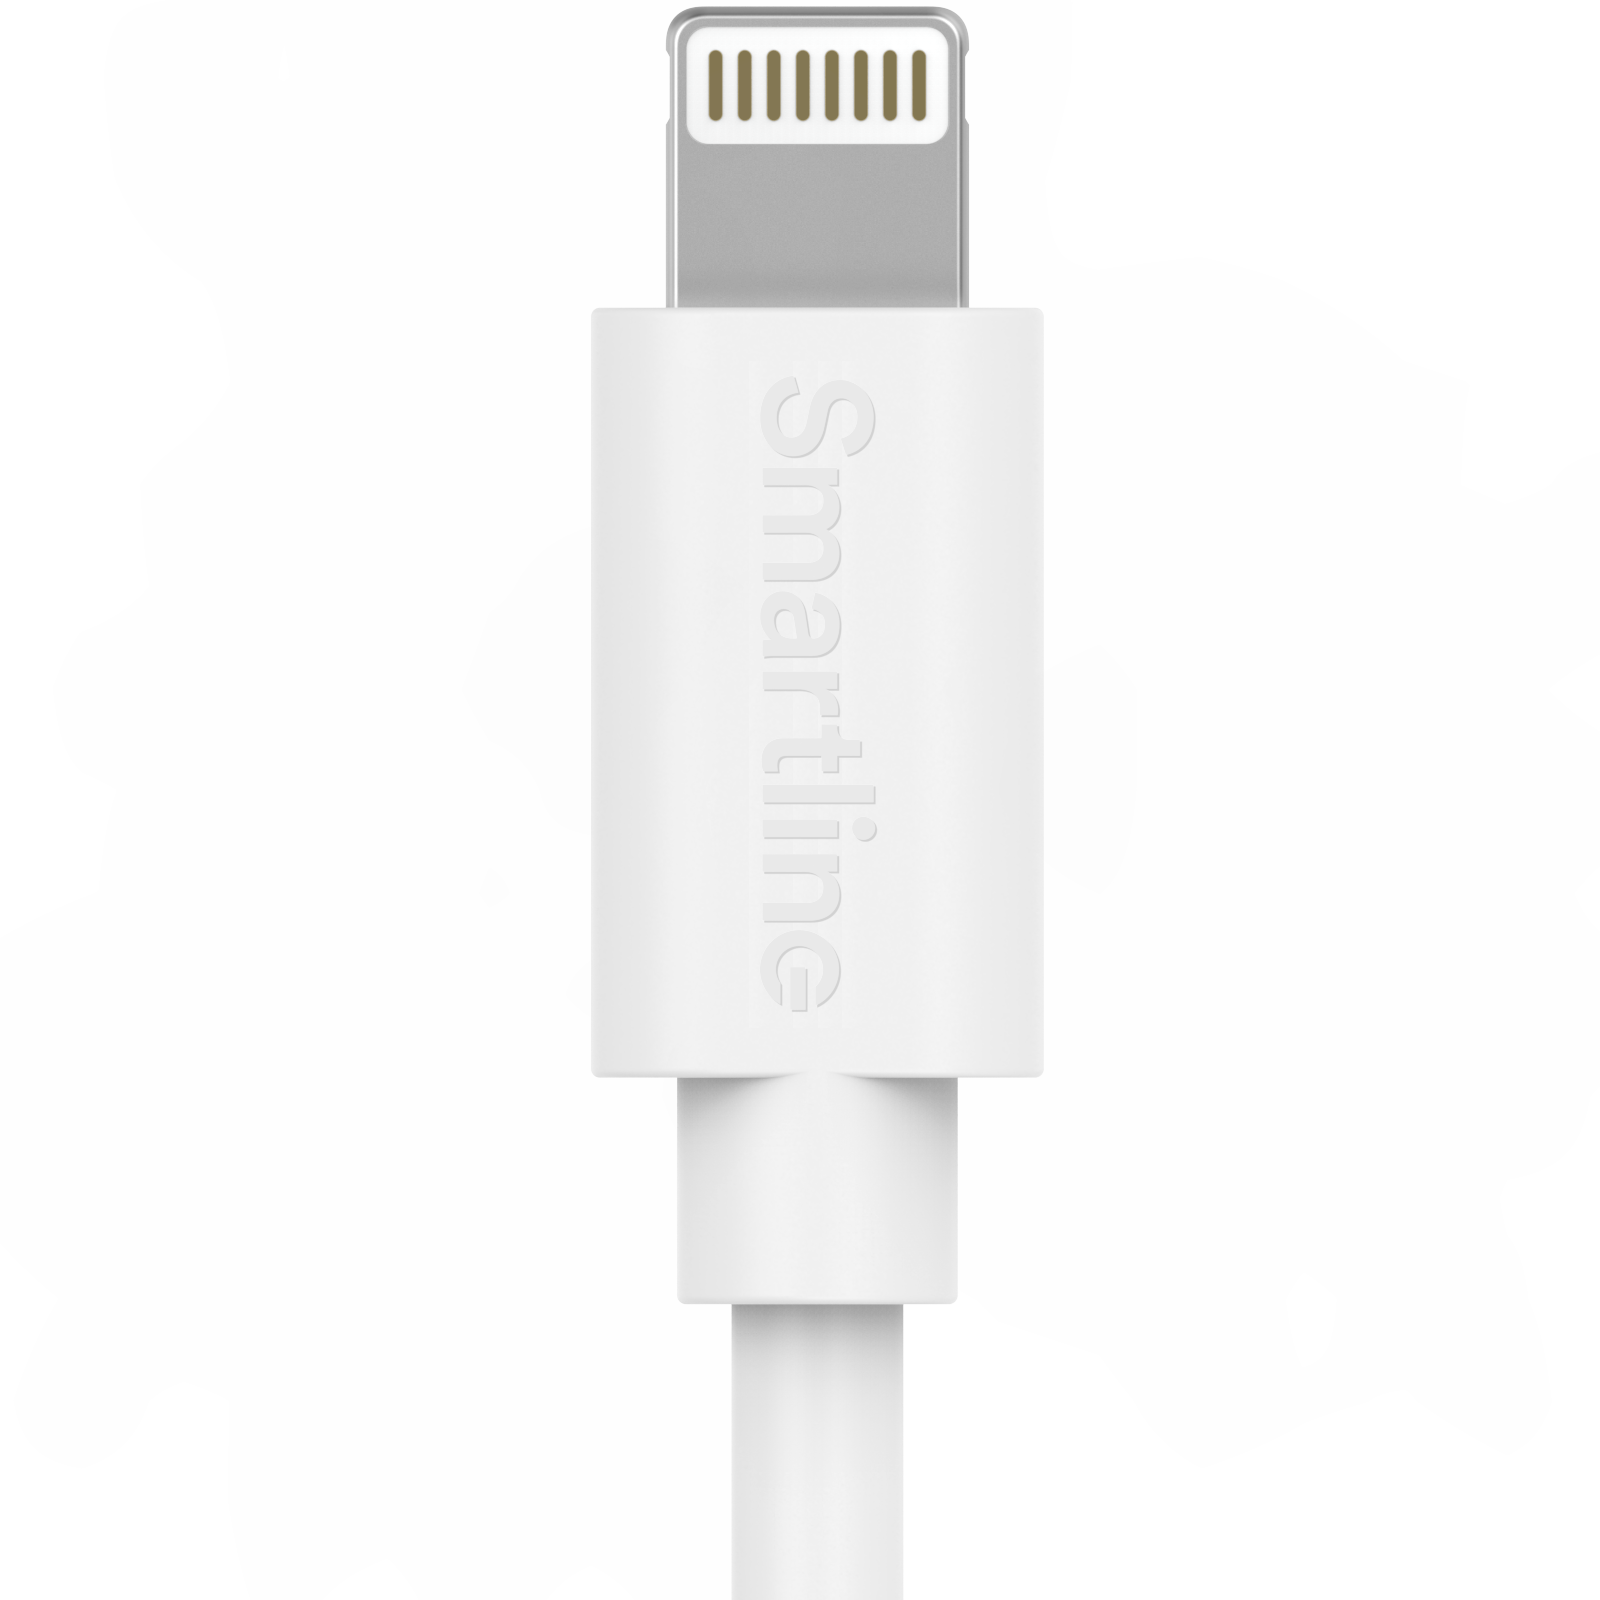 ved godt dejligt at møde dig huh Komplet oplader til iPhone 11 Pro Max - 2m kabel og vægoplader - Smartline  - køb online